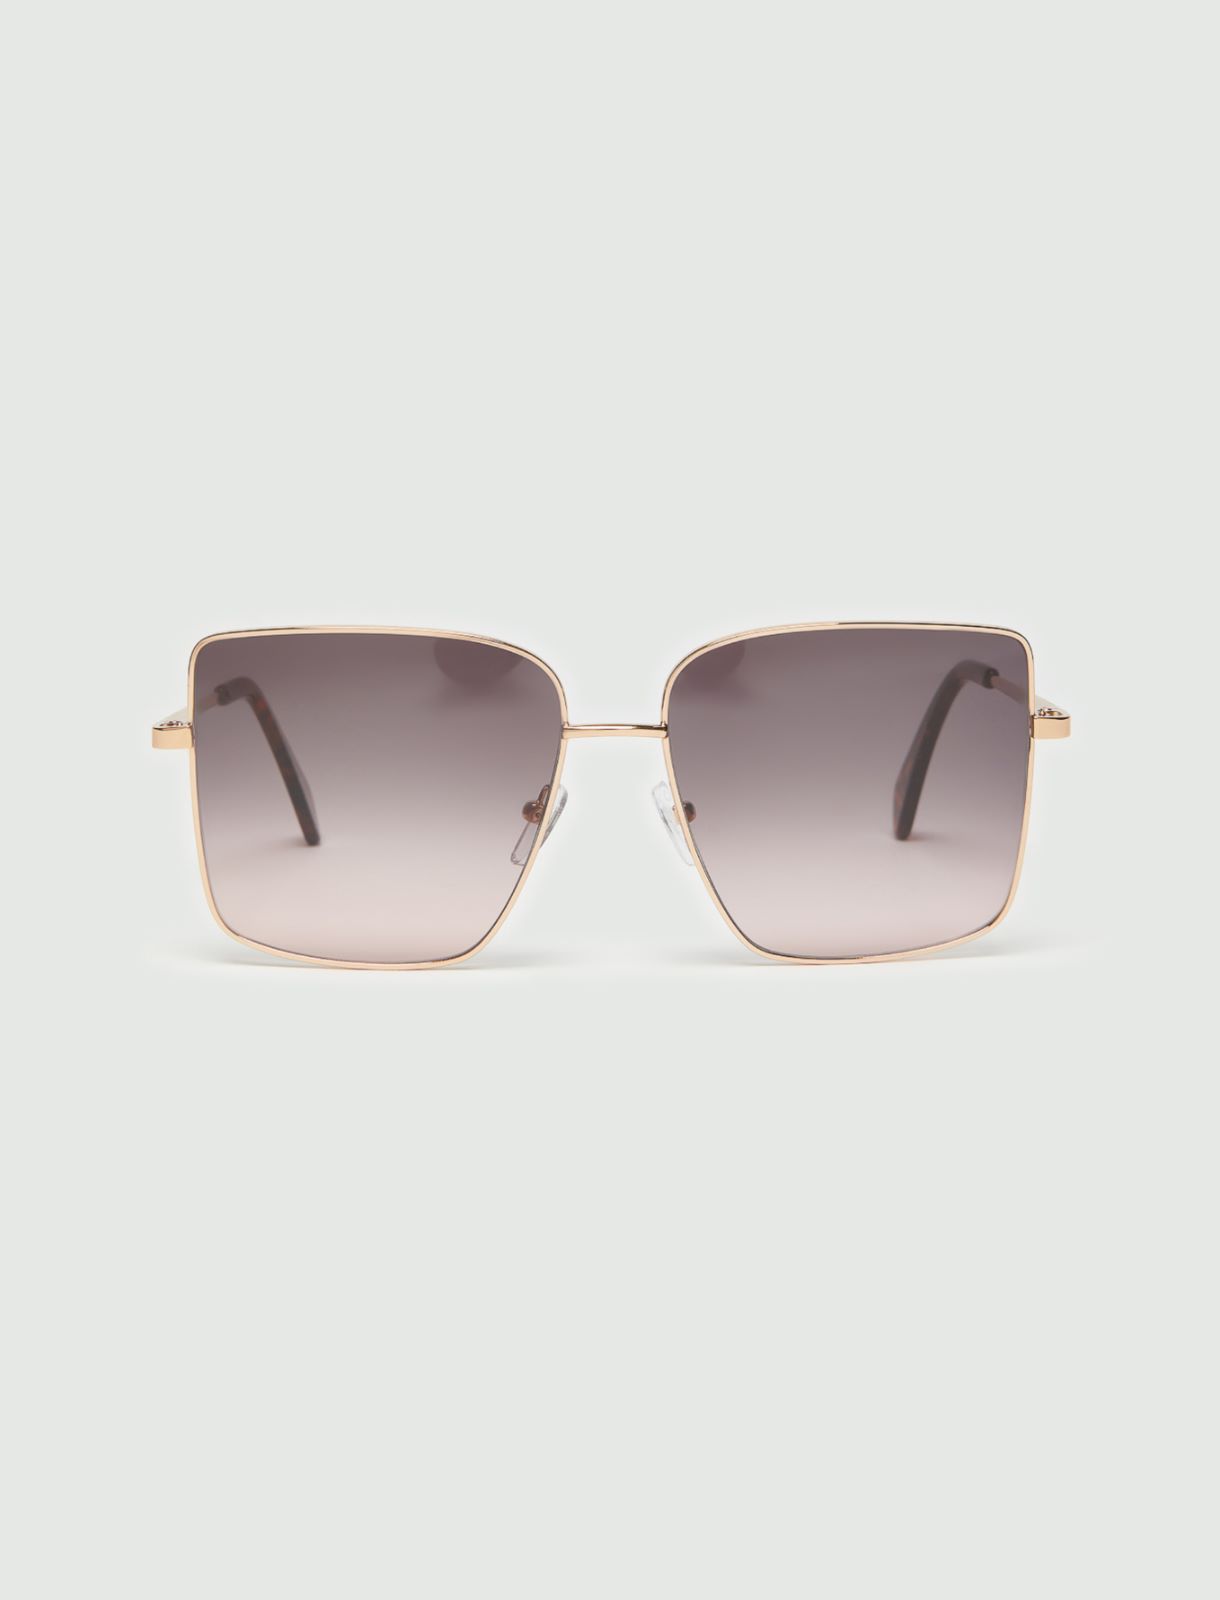 Sonnenbrille aus Metall - Terrakotta - Marella